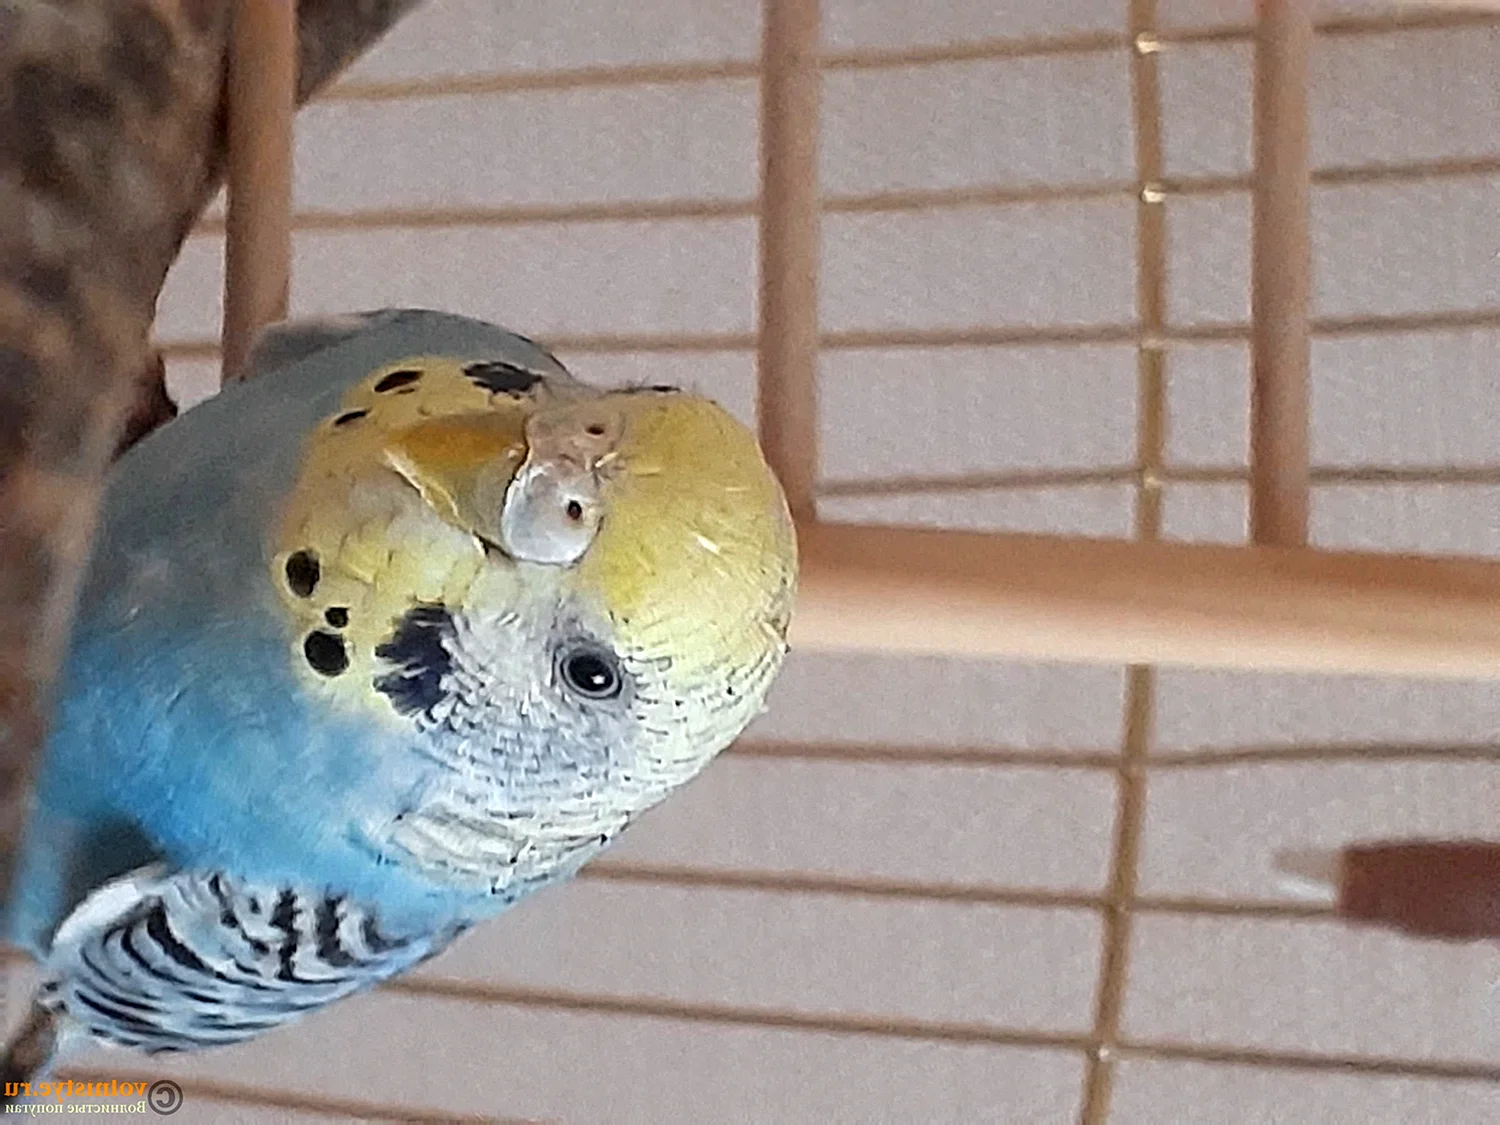 Восковица у волнистых попугаев пол